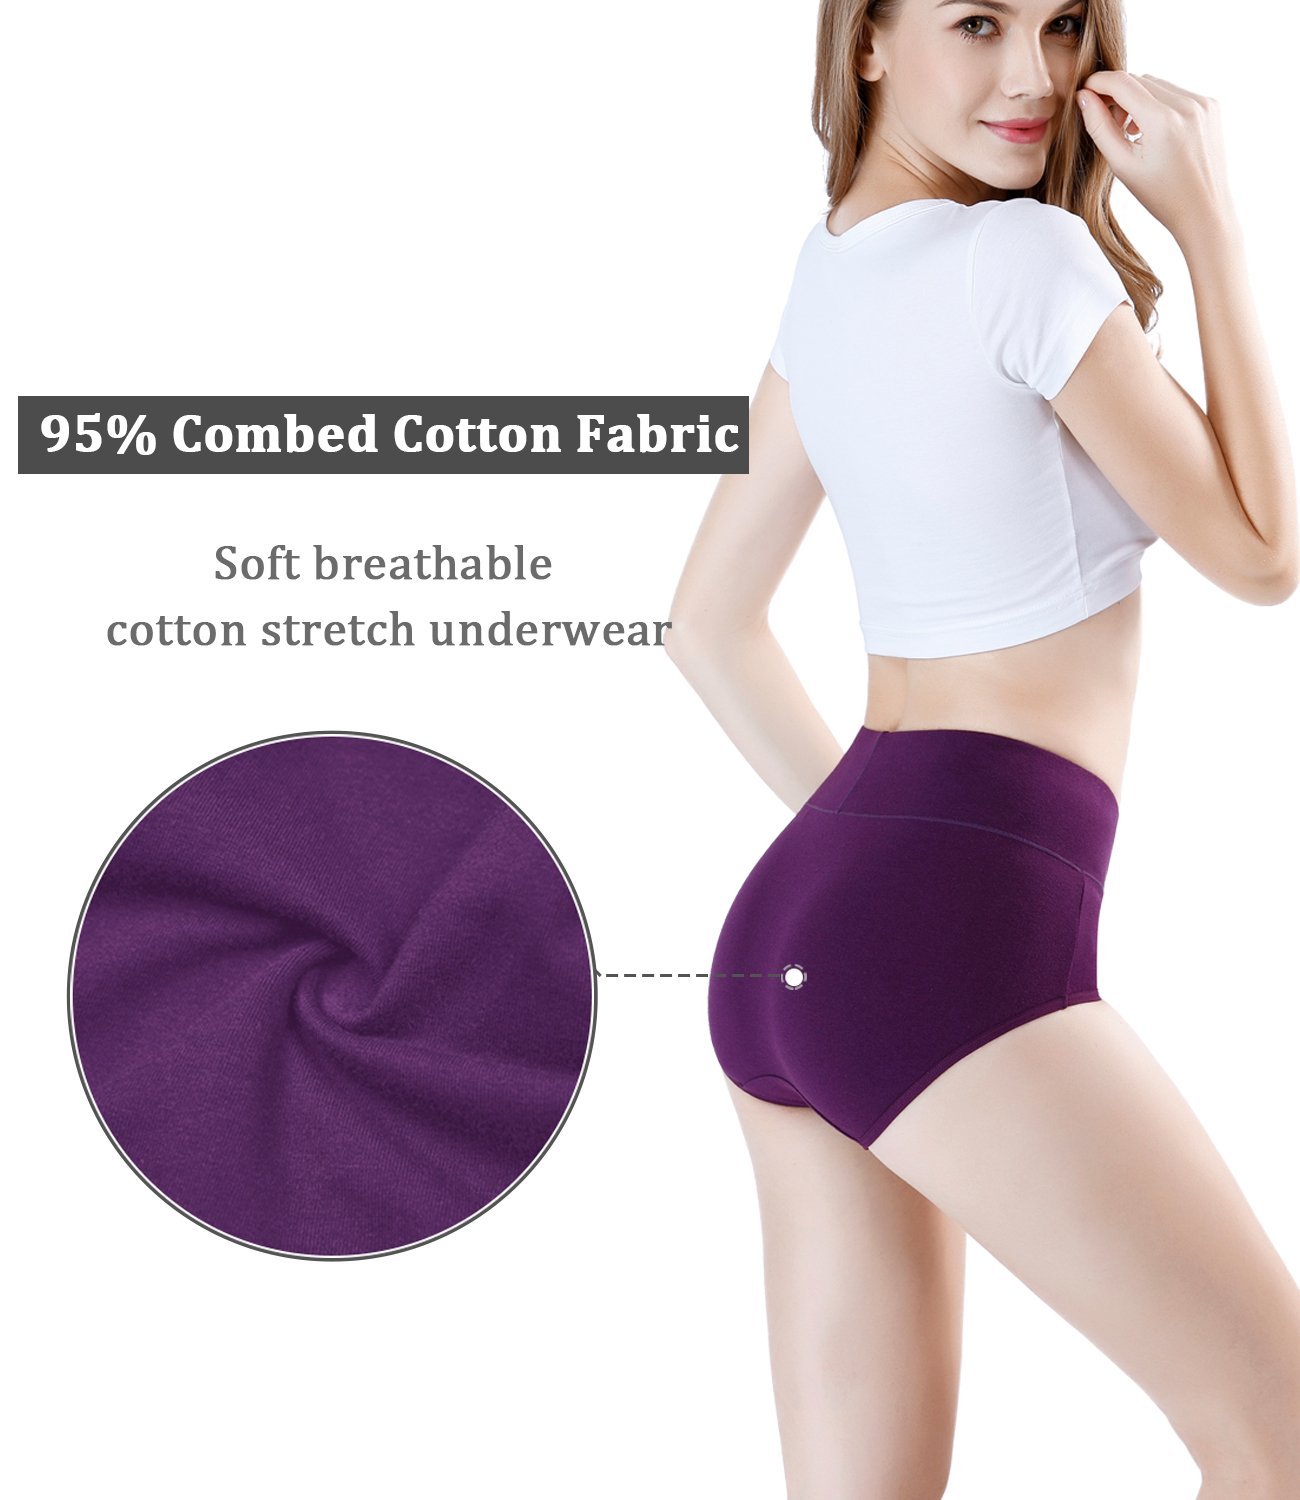 wirarpa Women's High Waisted Cotton Underwear Ladies Soft Full